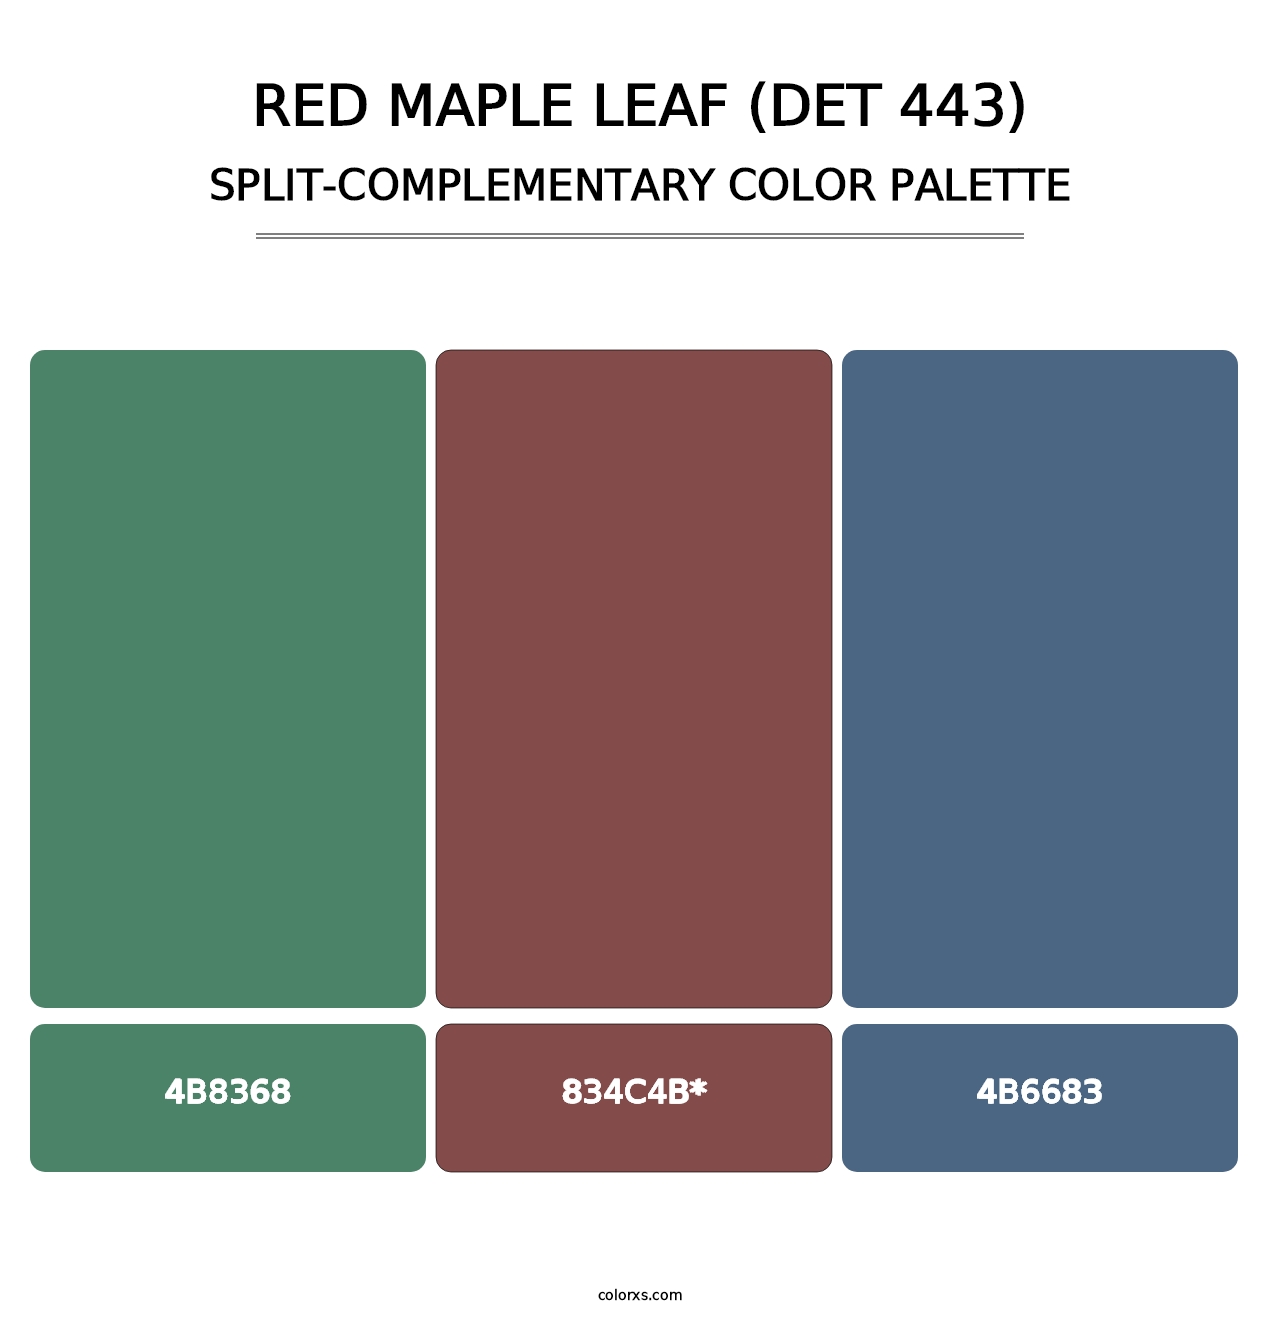 Red Maple Leaf (DET 443) - Split-Complementary Color Palette